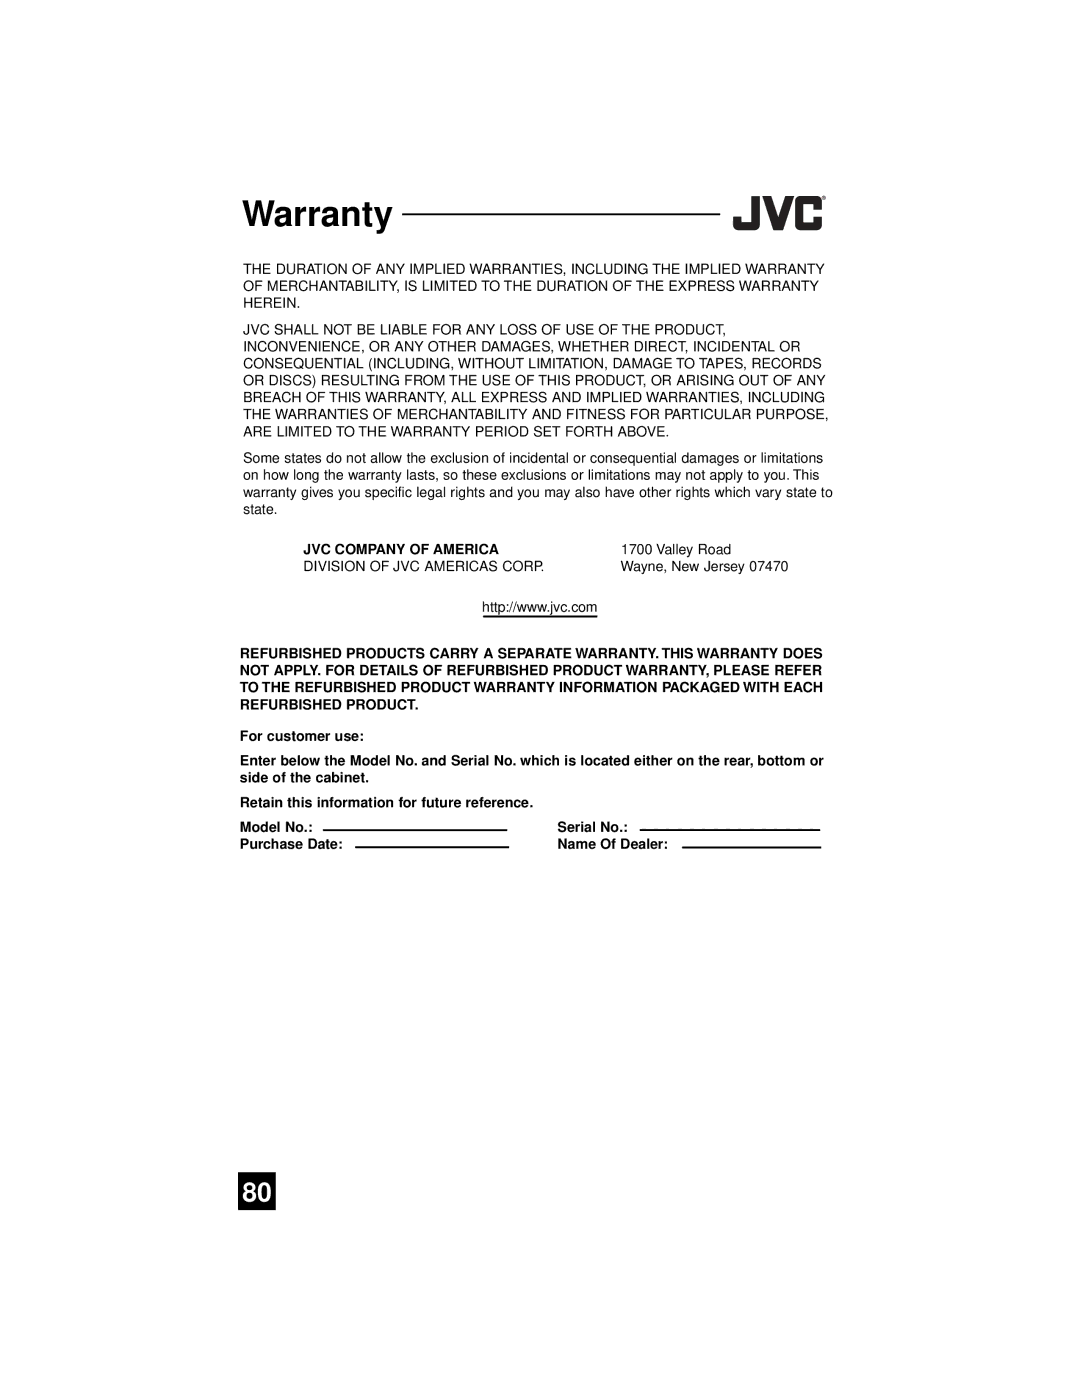 JVC AV-65WP94, AV 56WP94 manual Model No Serial No Purchase Date Name Of Dealer 